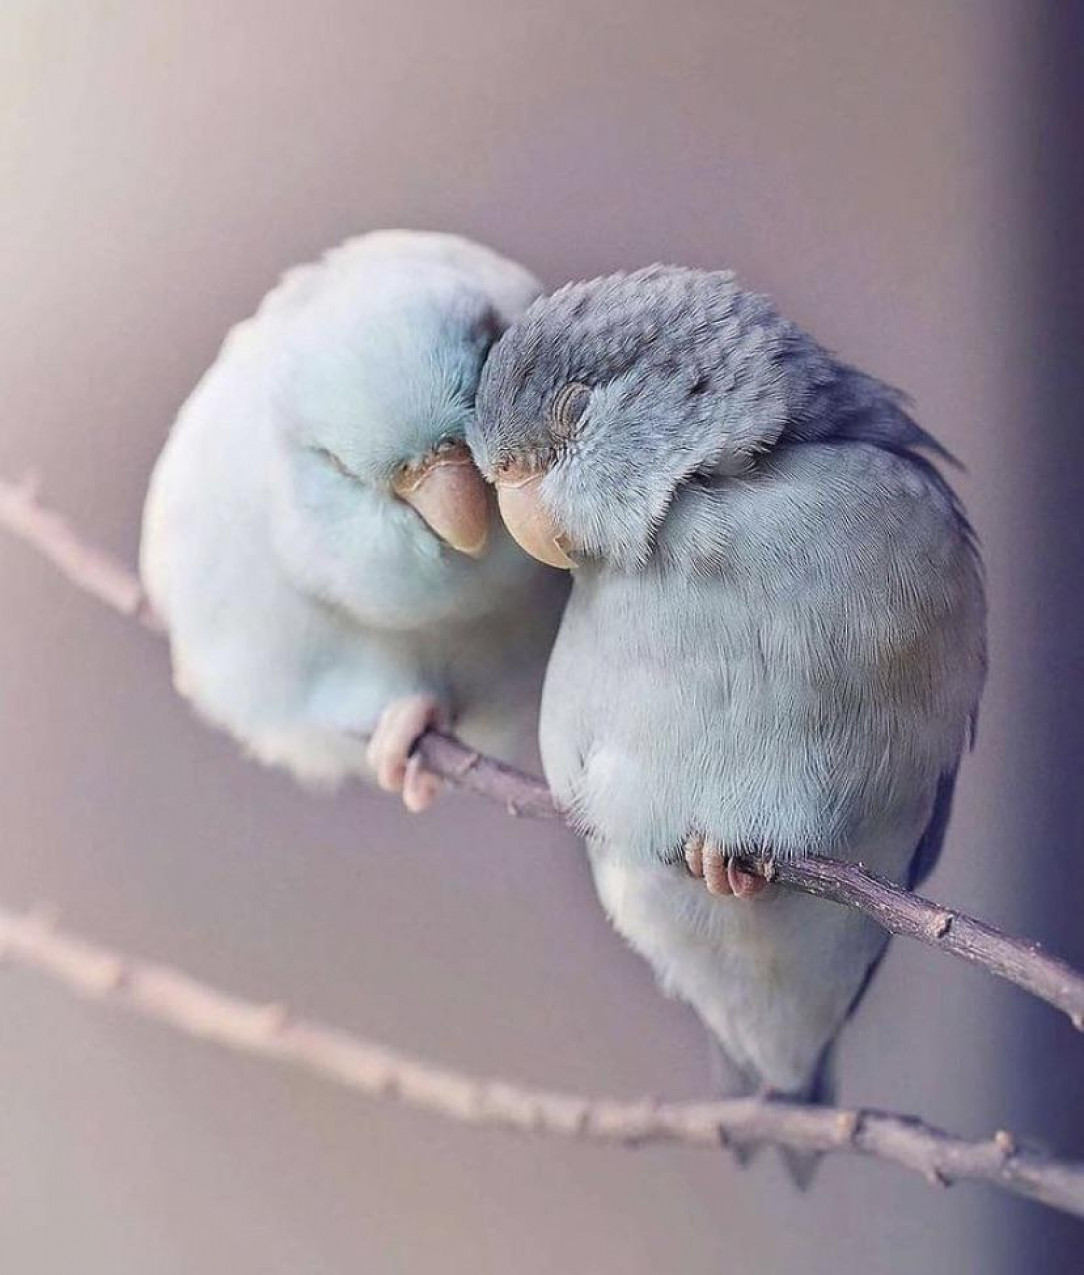 Beautiful inseparable bird 🥰